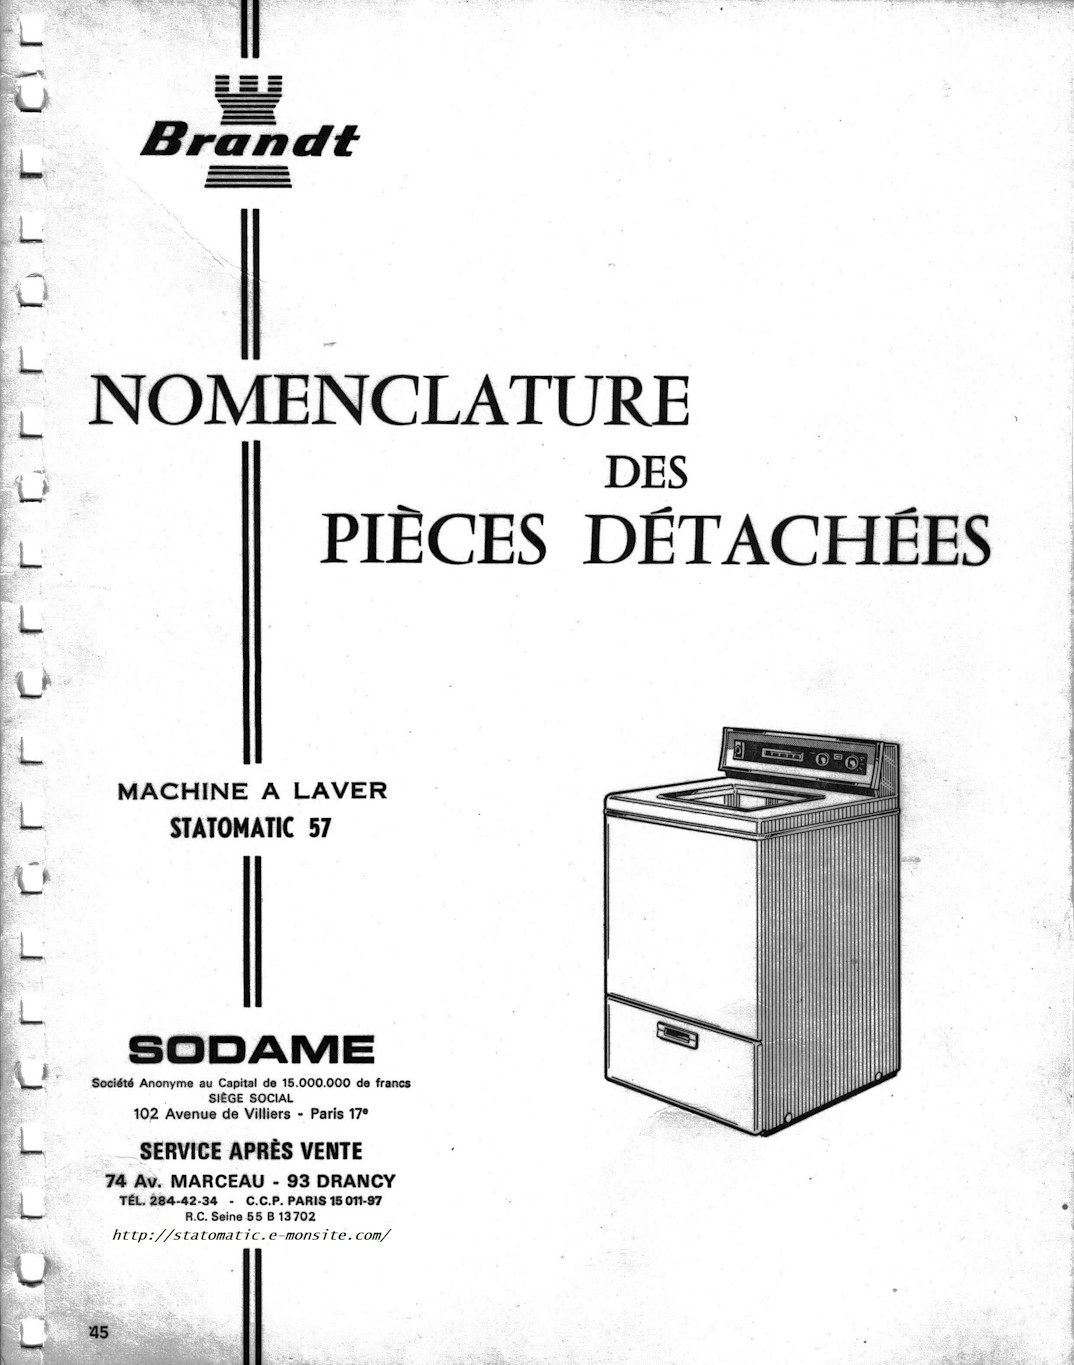 Machine à laver Brandt Statomatic 57, nomenclature des pièces détachées